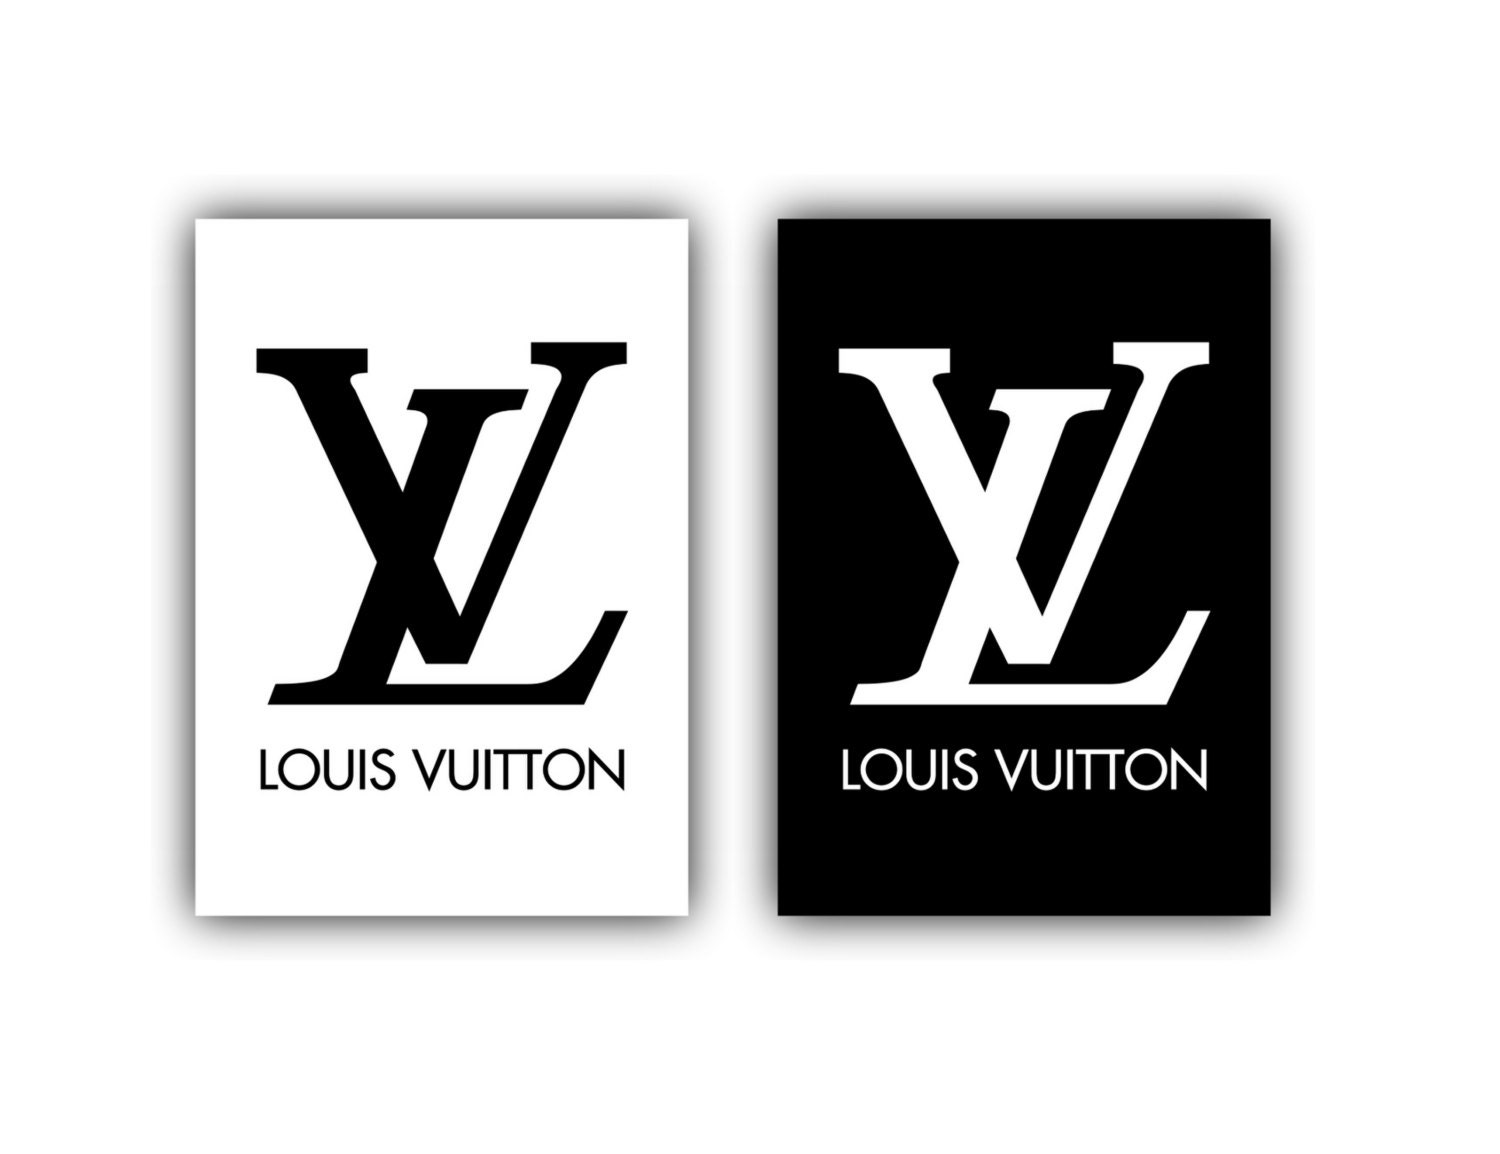 2 Prints Louis Vuitton Art Louis Vuitton Poster Fashion